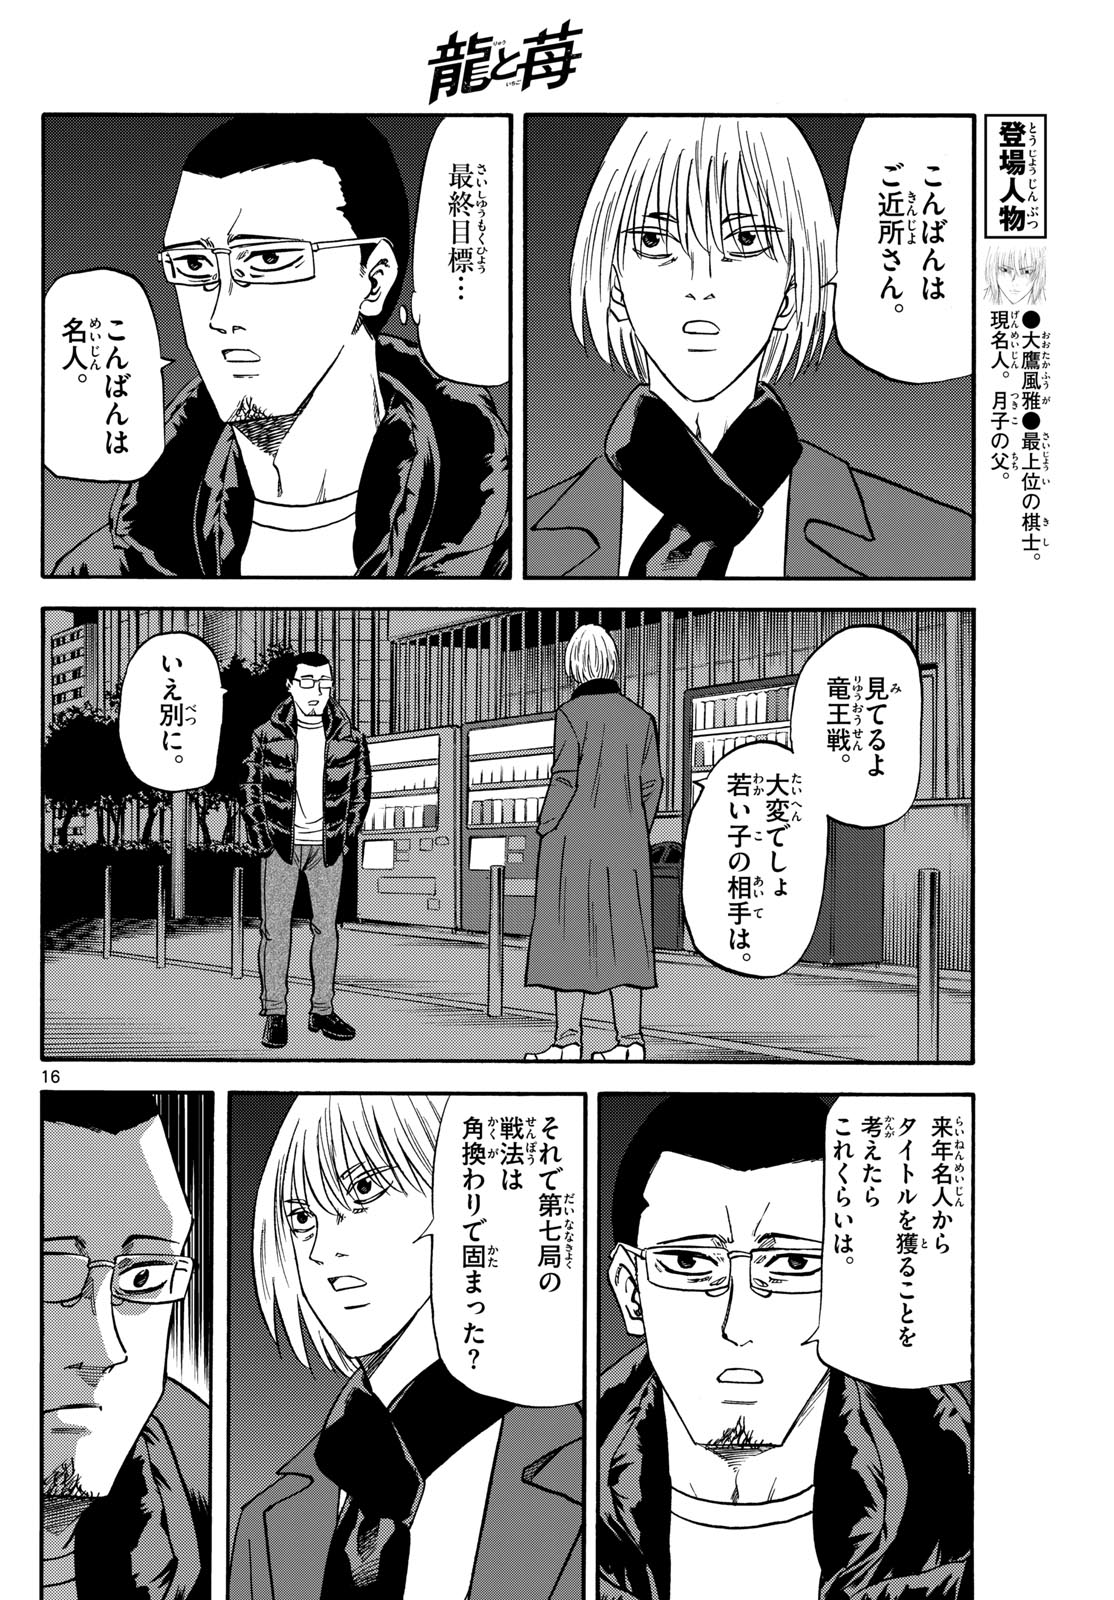 Tatsu to Ichigo - Chapter 171 - Page 16